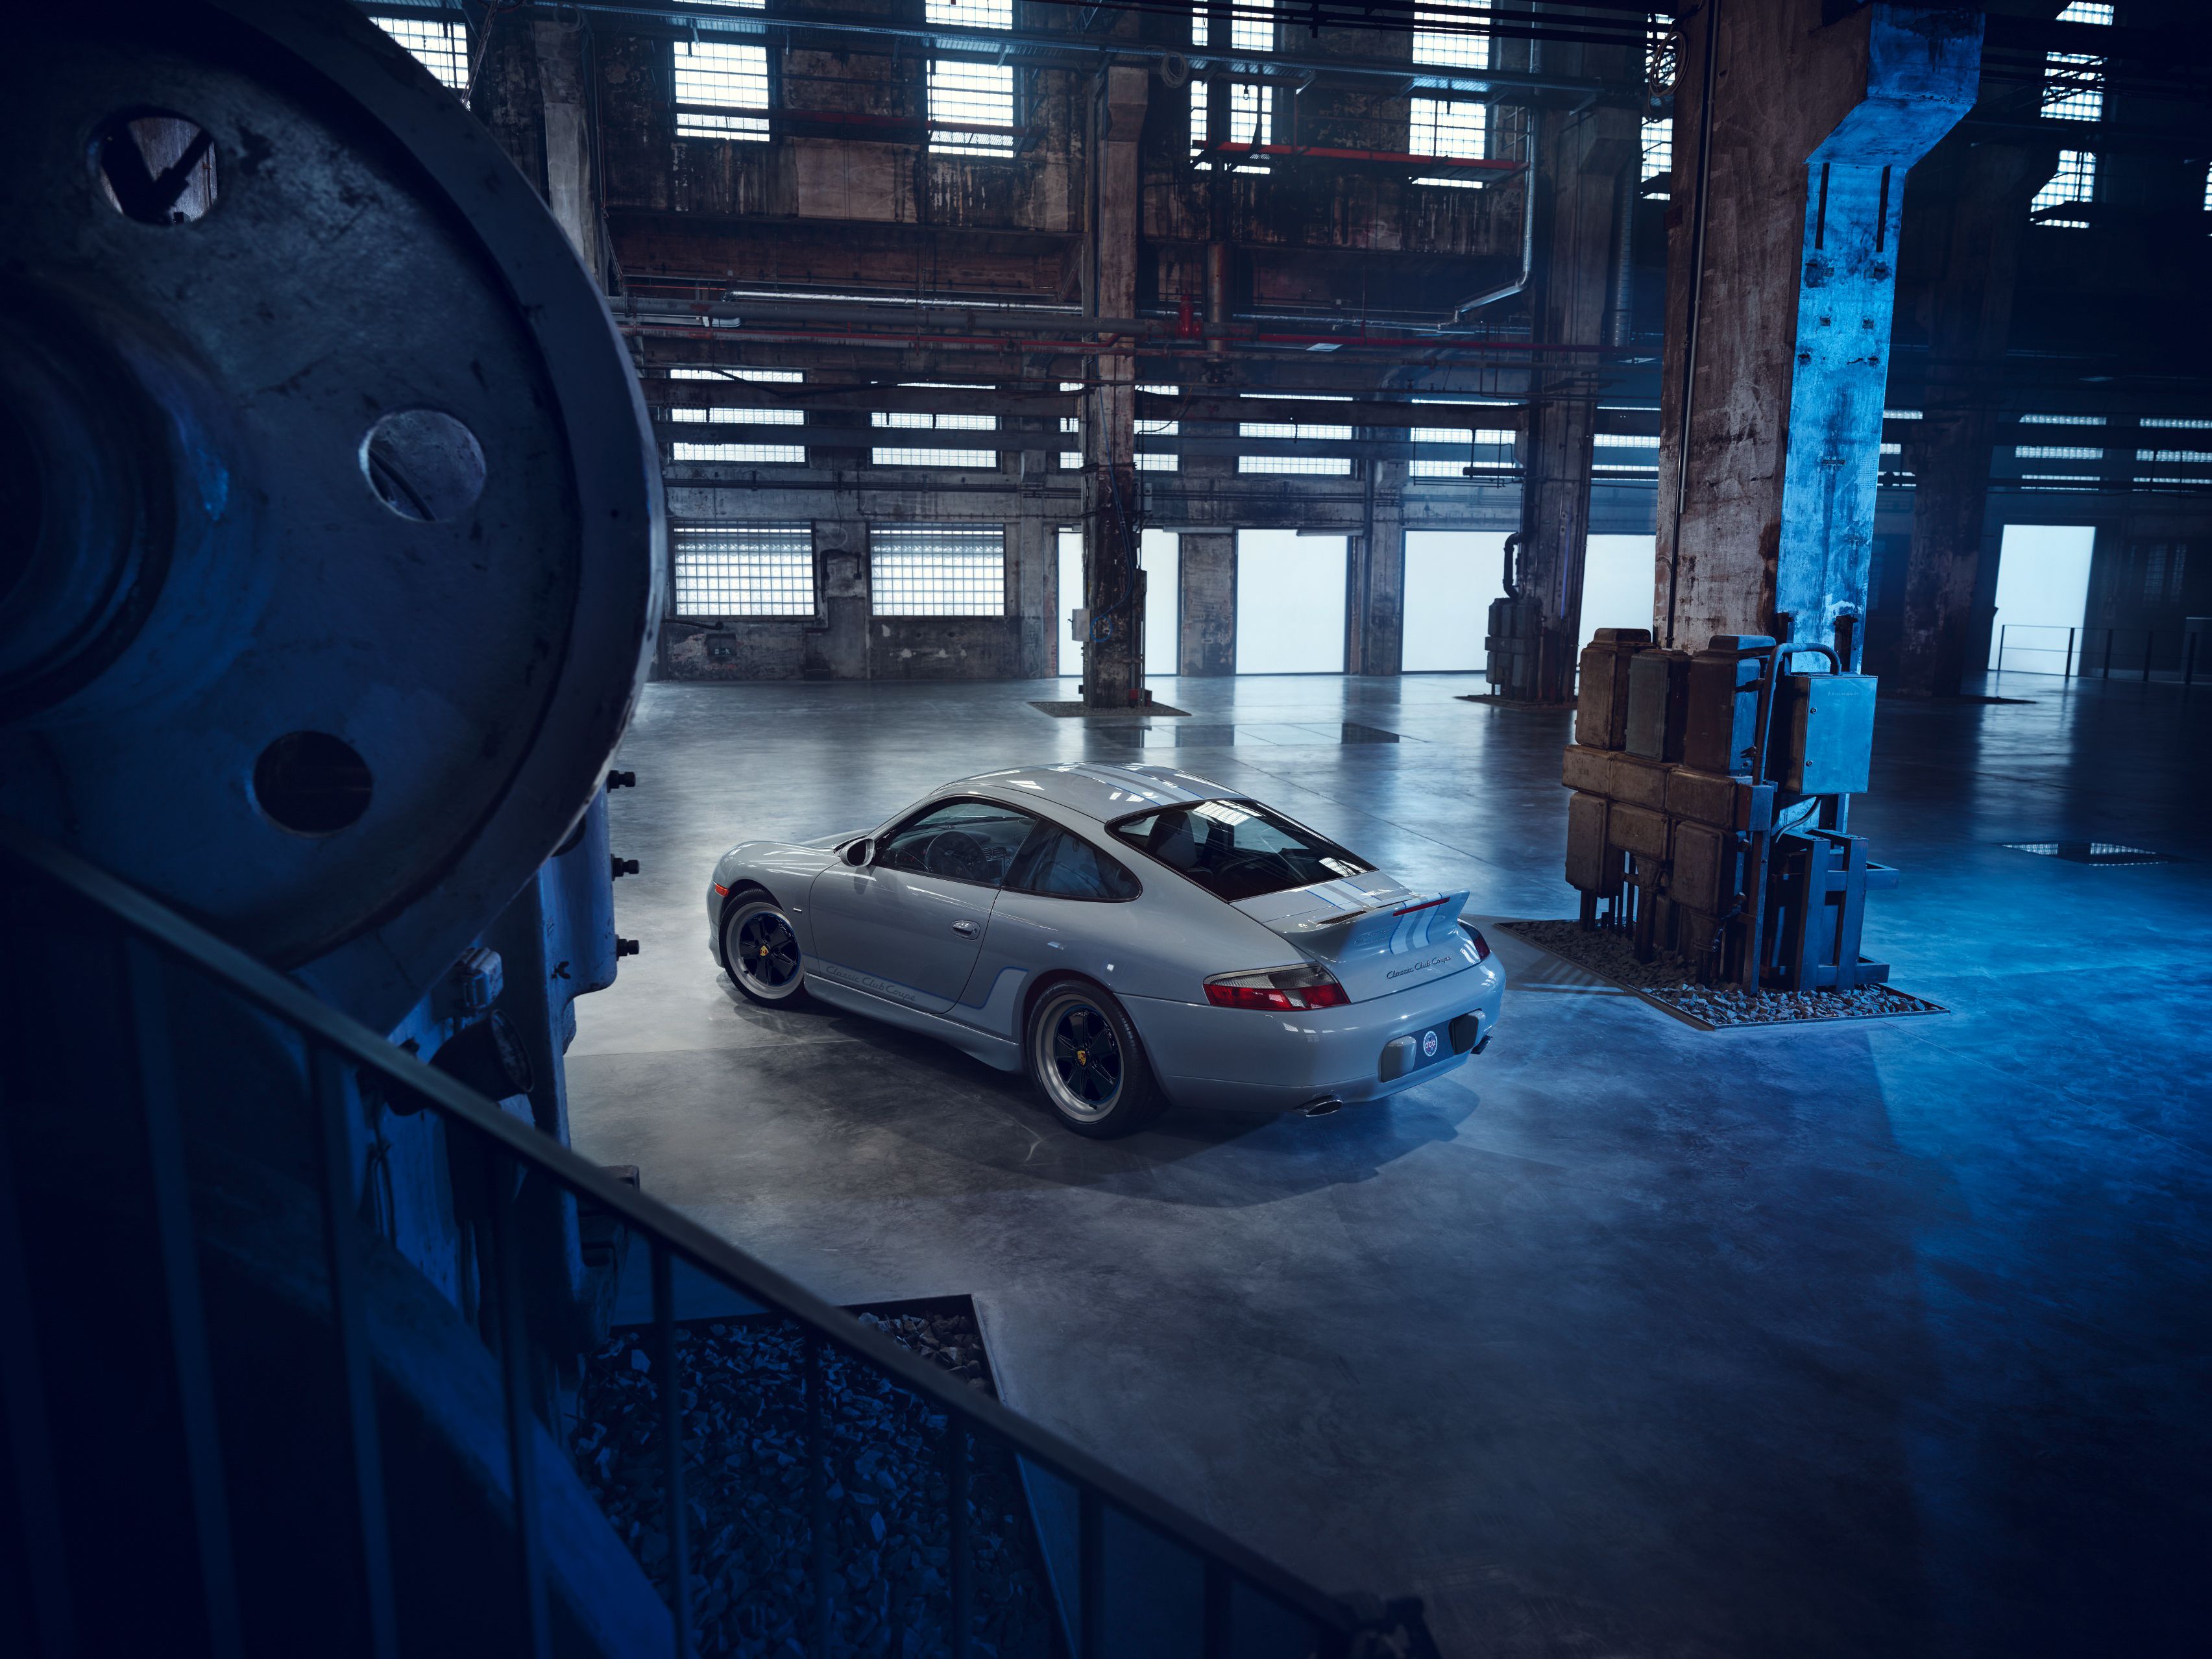 Descarga gratuita de fondo de pantalla para móvil de Porsche, Vehículos, Porsche 911 Carrera.